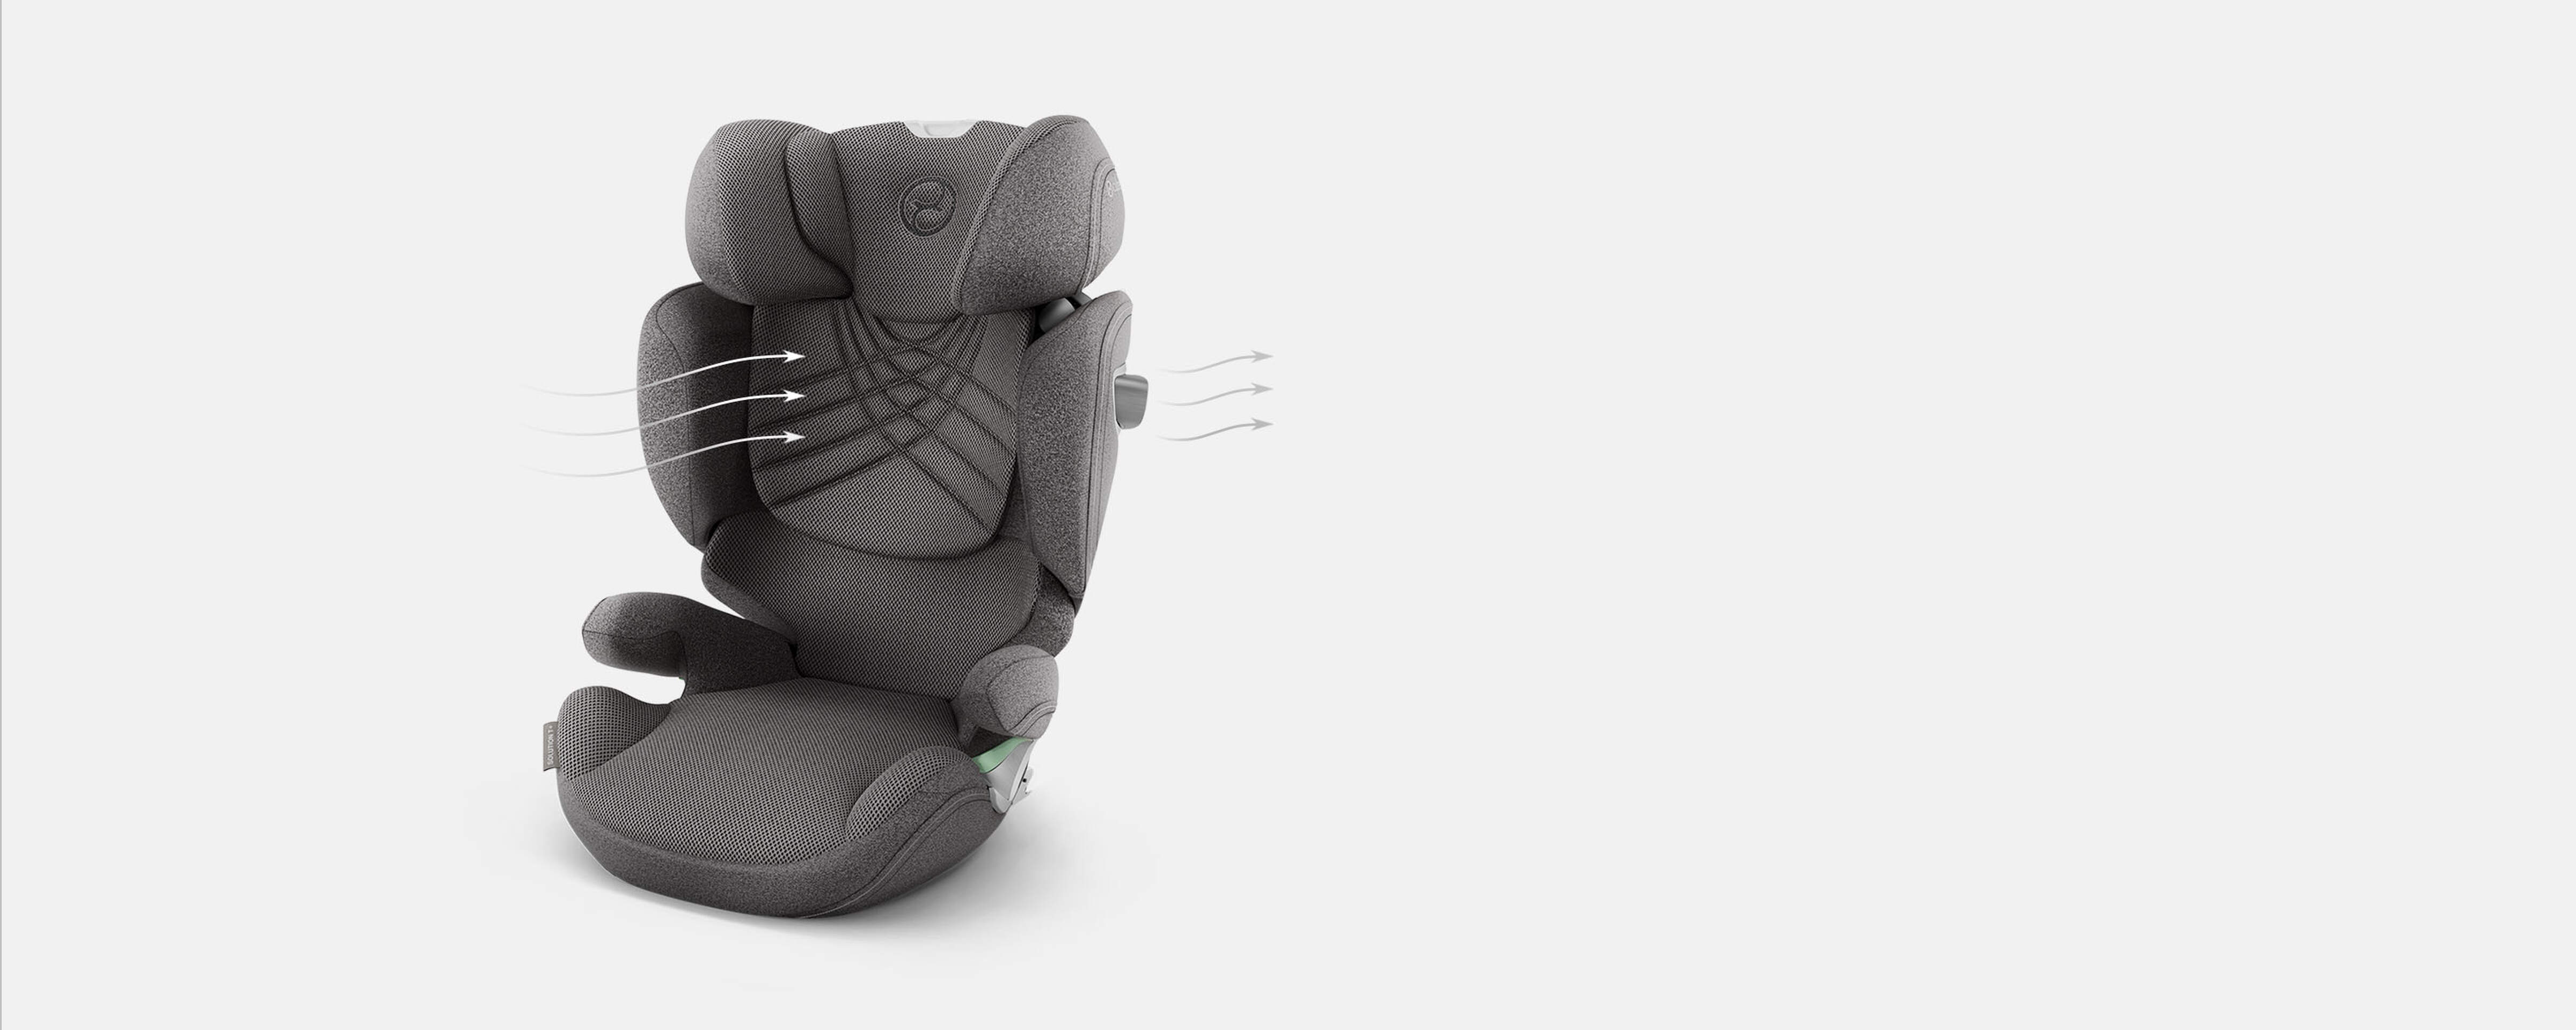 CYBEX Platinum Kindersitz Solution T i-Fix mit rundum Luftzirkulation für eine angenehme Temperatur